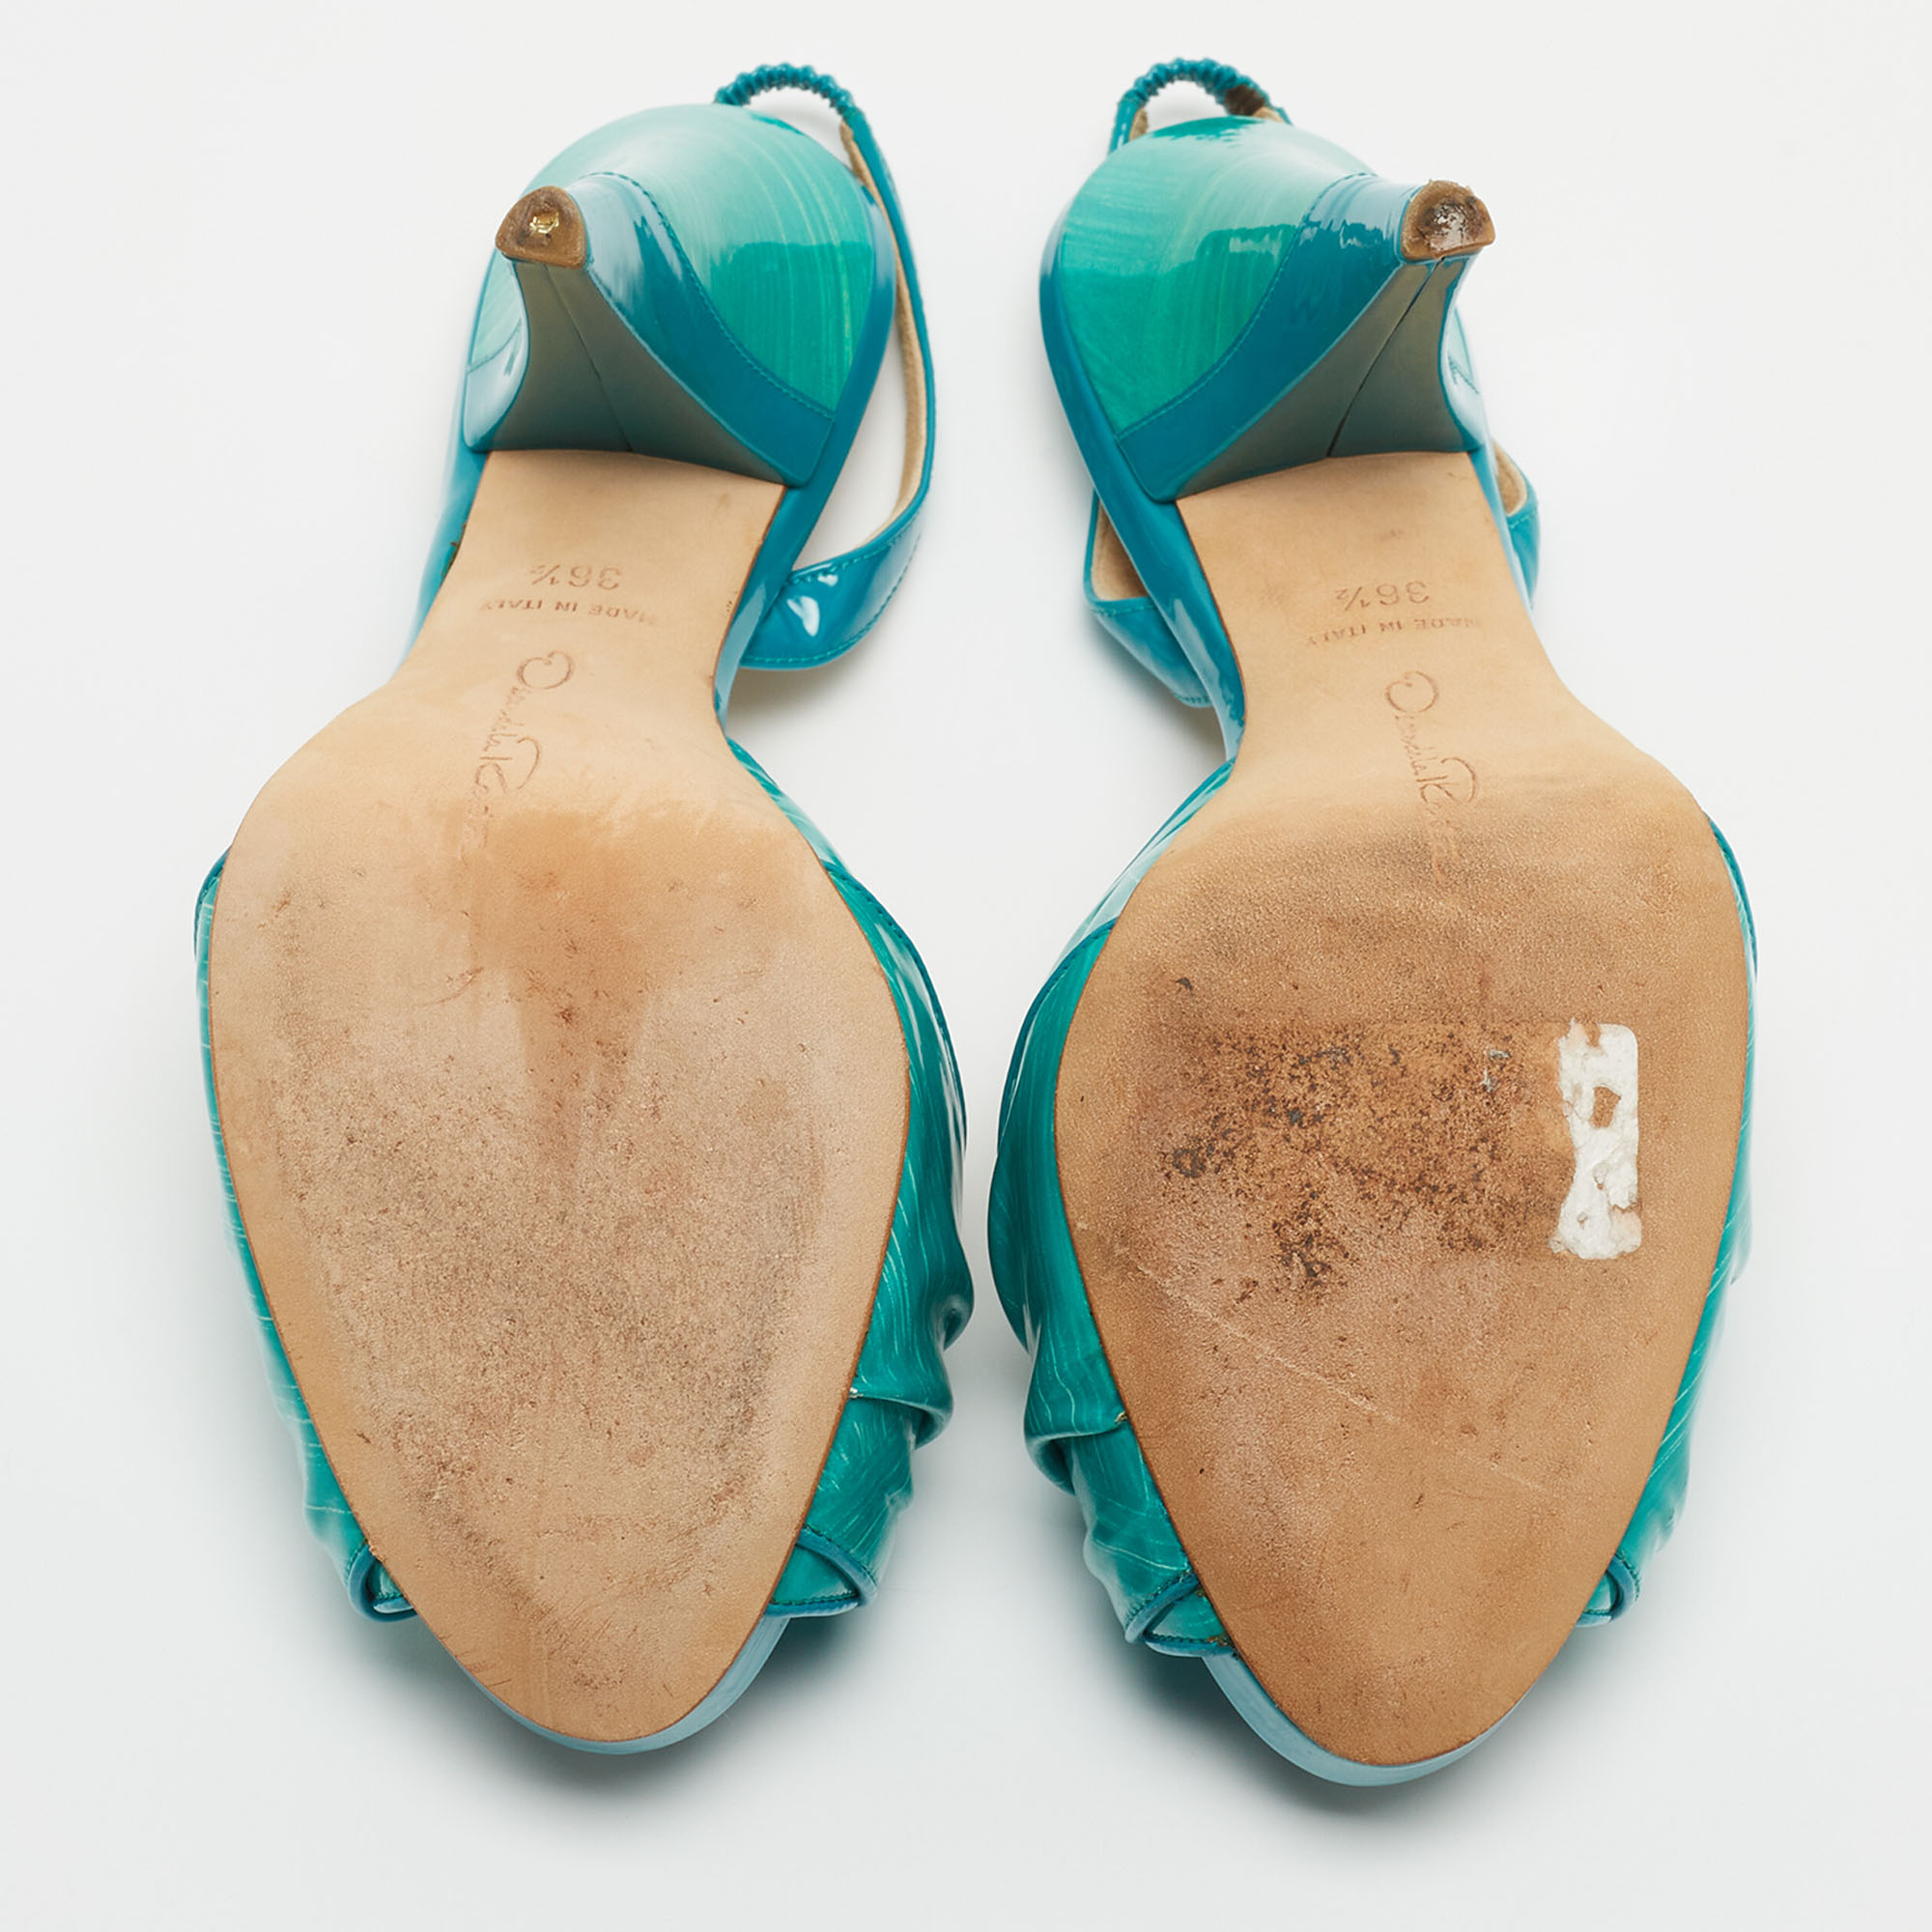 Oscar De La Renta Turquoise Patent Leather Bow Platform Slingback Sandals Size 36.5